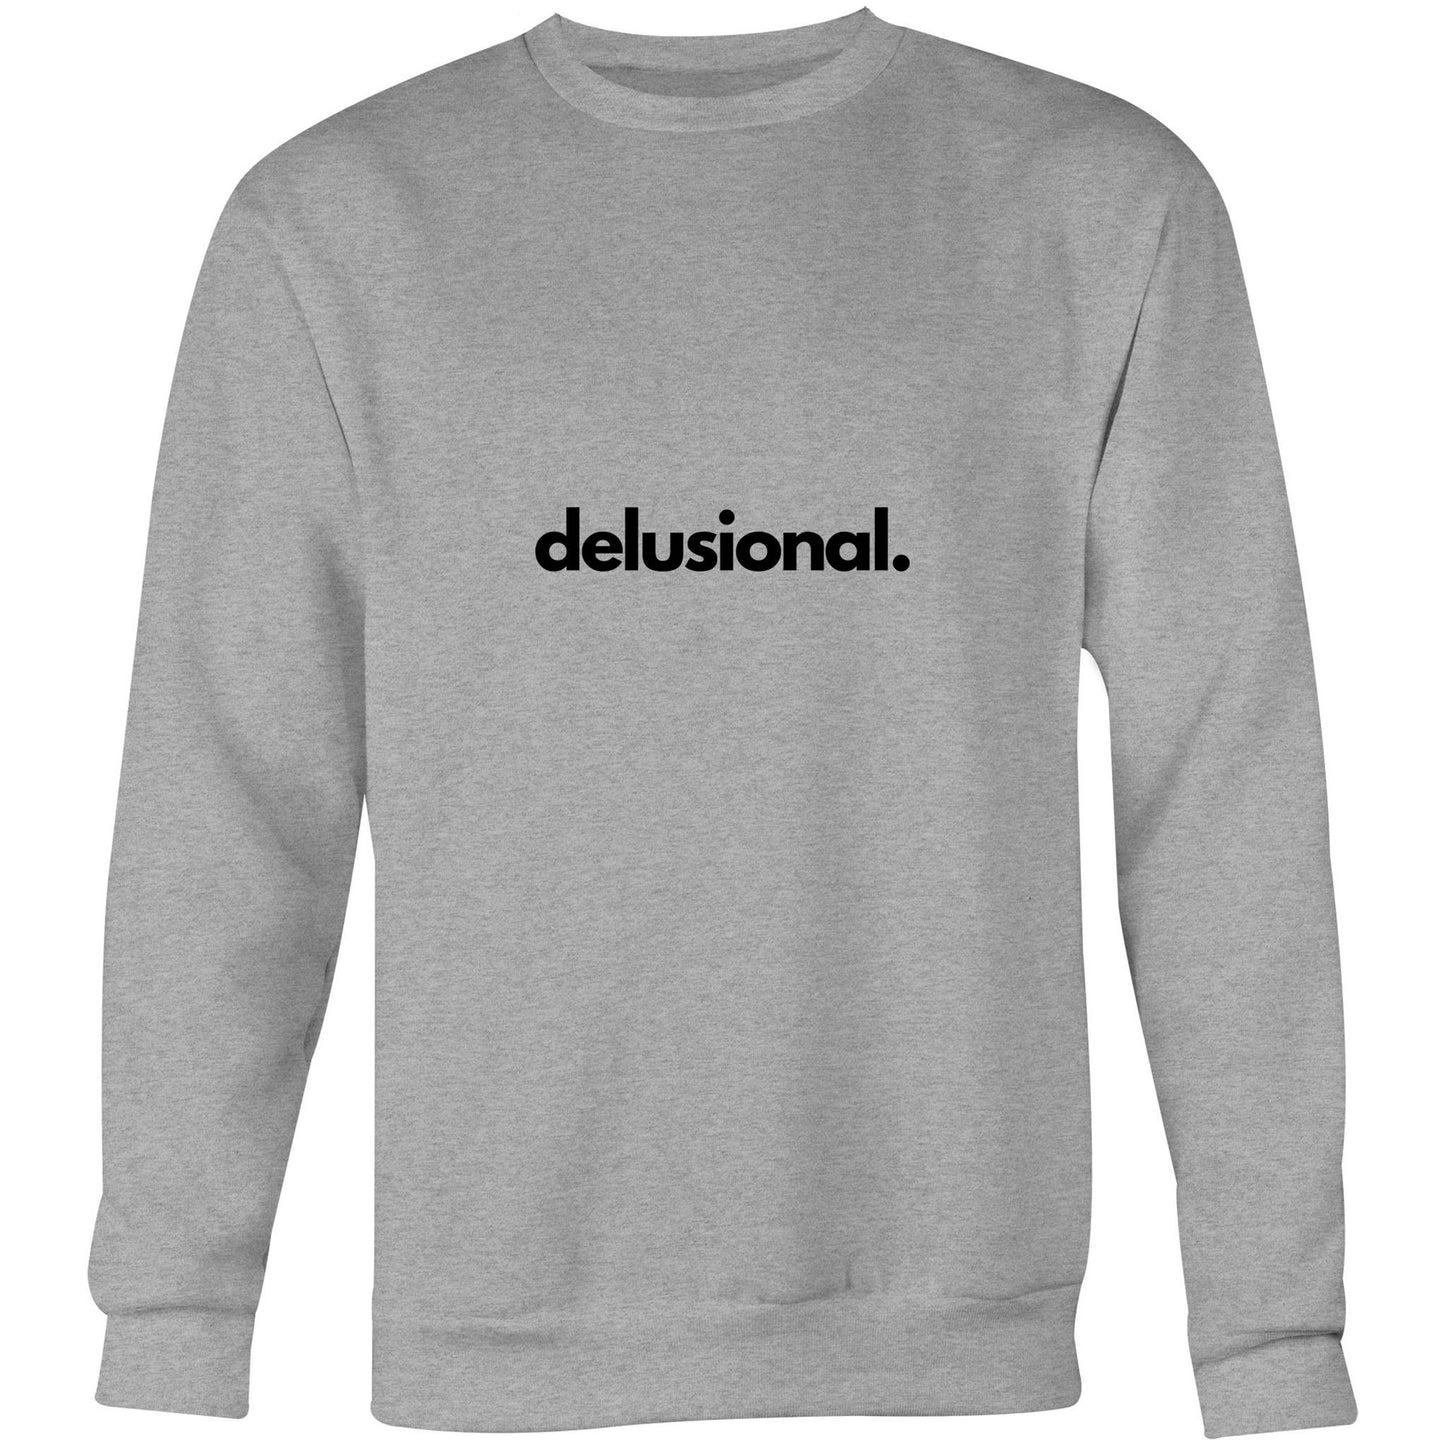 delusional- Crew Sweatshirt